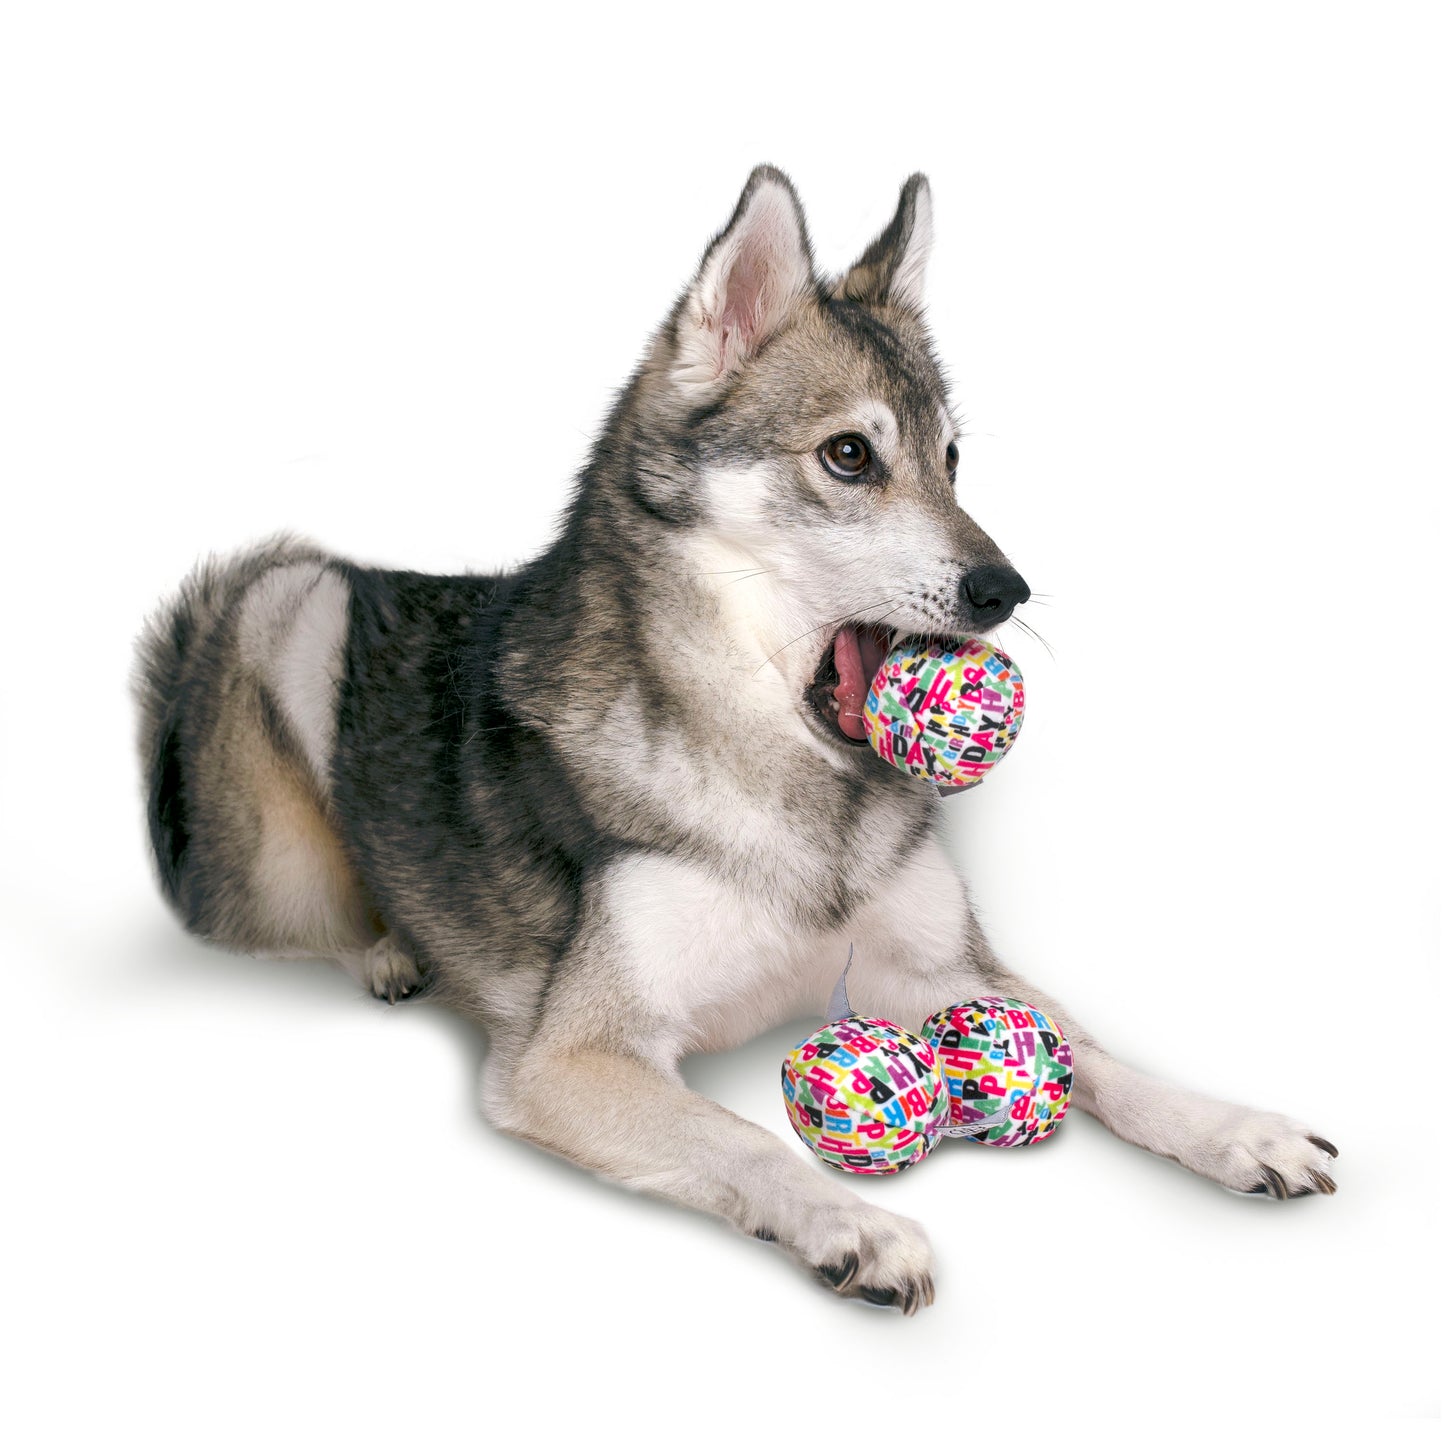 Midlee Plush Birthday Balls Dog Toy- Set of 3